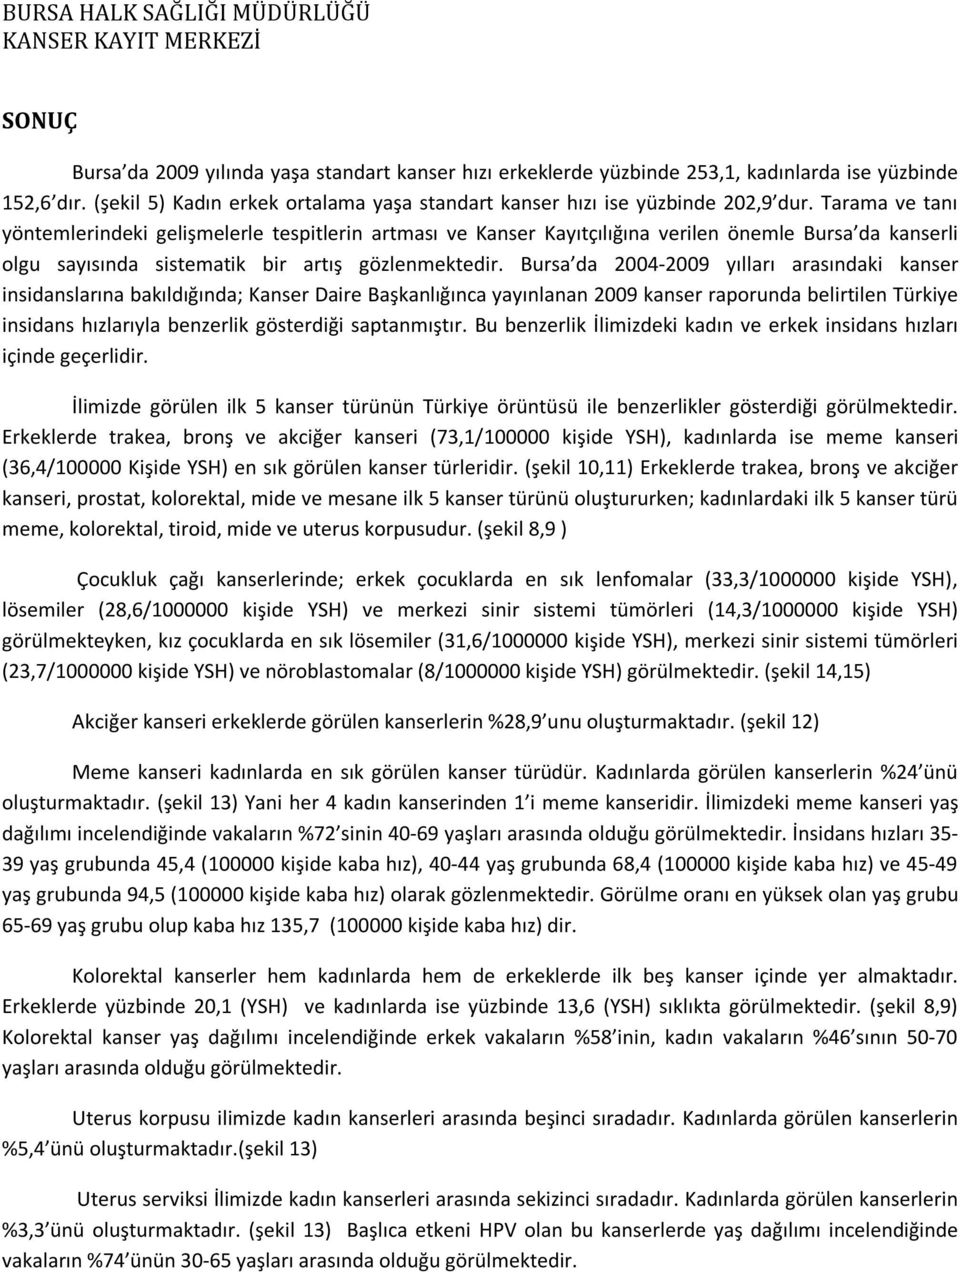 Bursa da 2004-2009 yılları arasındaki kanser insidanslarına bakıldığında; Kanser Daire Başkanlığınca yayınlanan 2009 kanser raporunda belirtilen Türkiye insidans hızlarıyla benzerlik gösterdiği